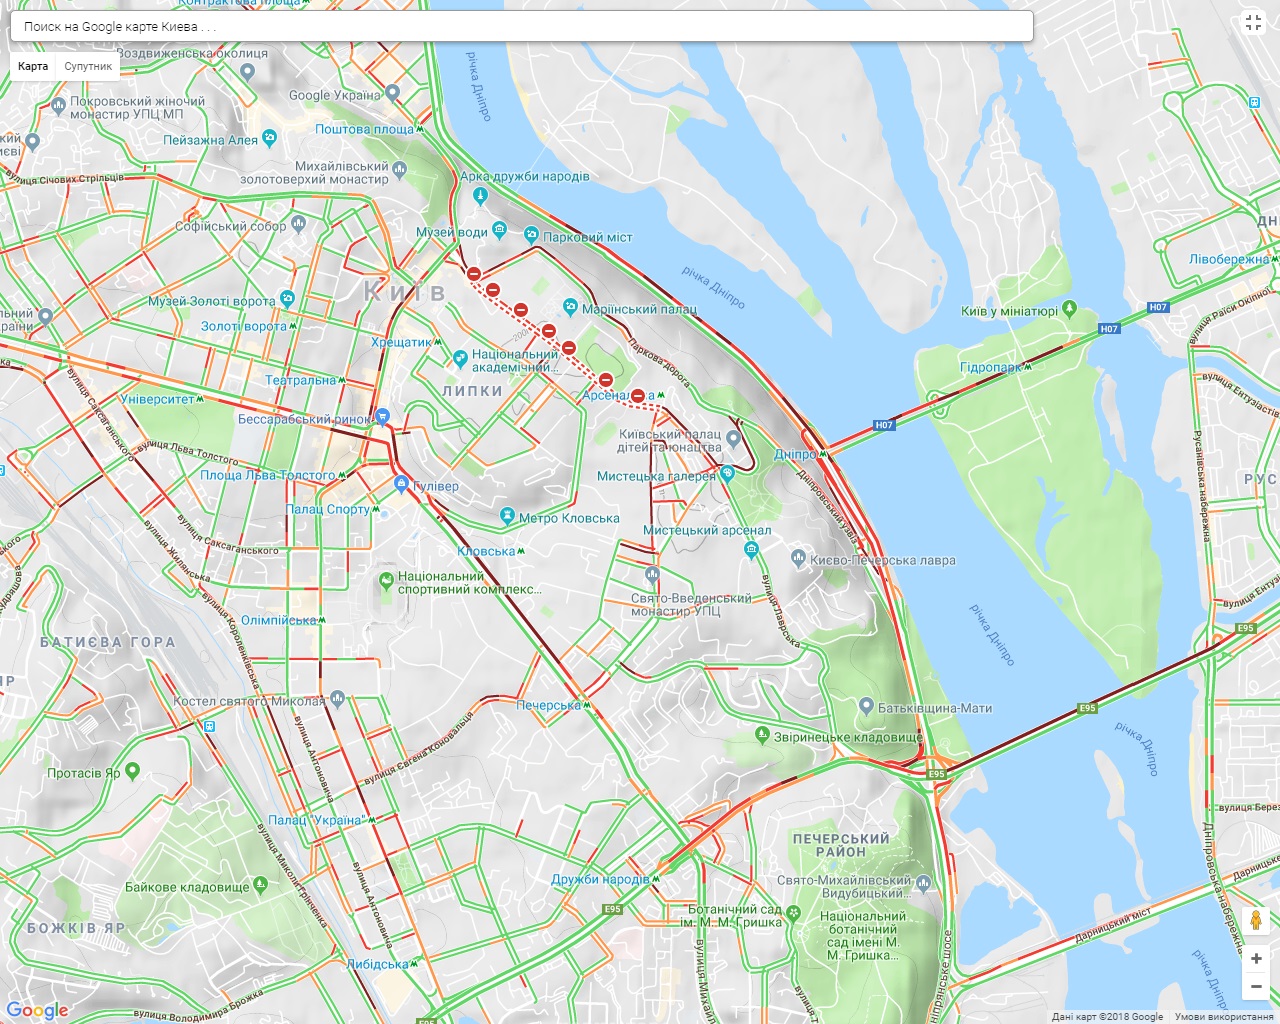 Центр Киева блокирован, пробки 8-9 баллов: какие улицы объезжать